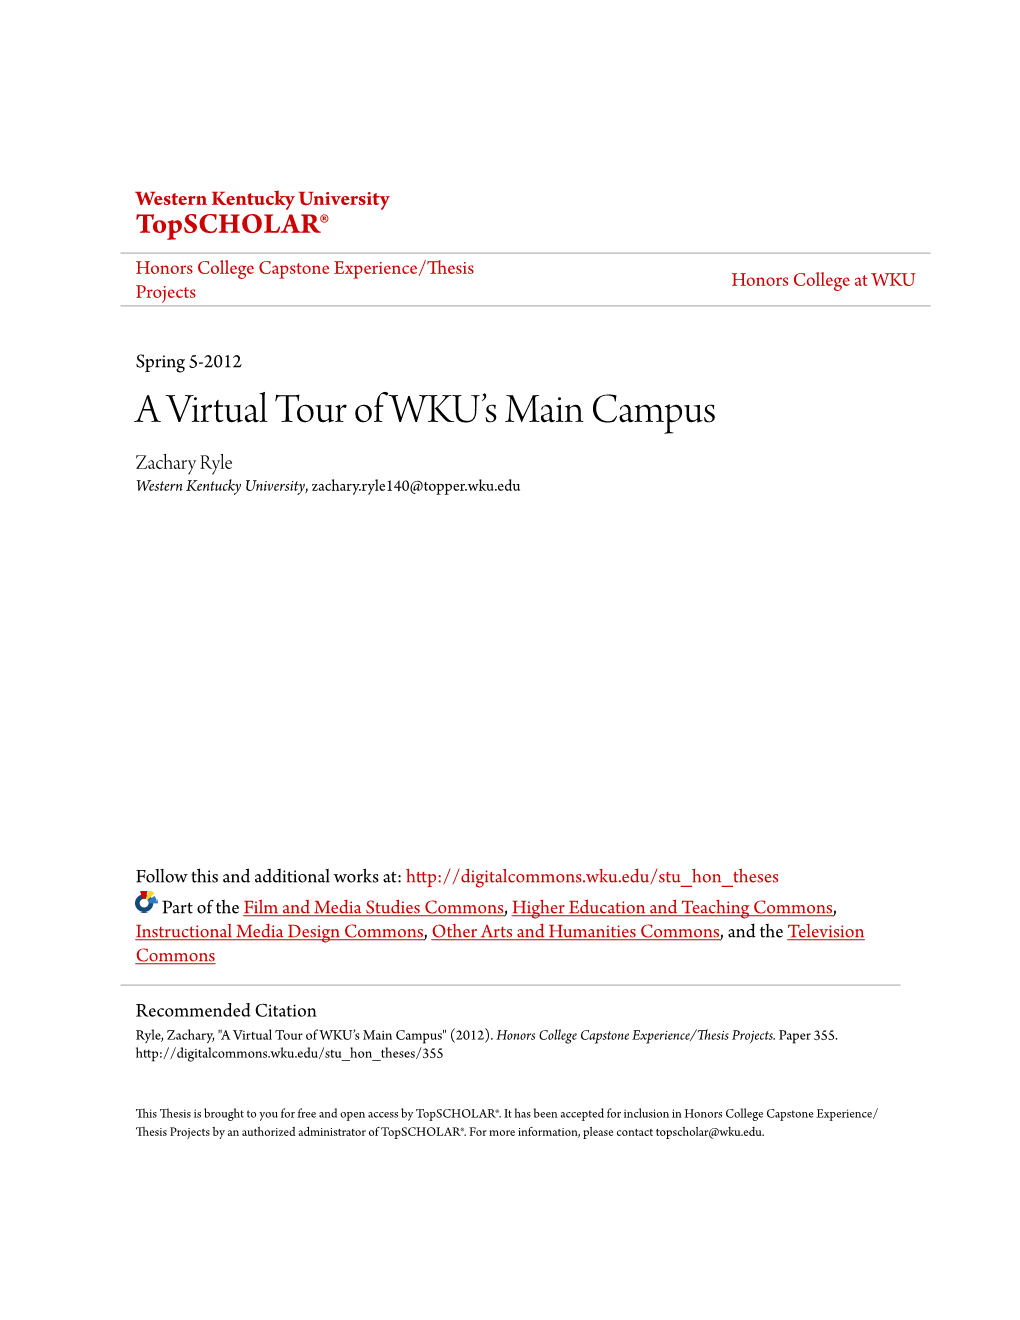 A Virtual Tour of WKU's Main Campus